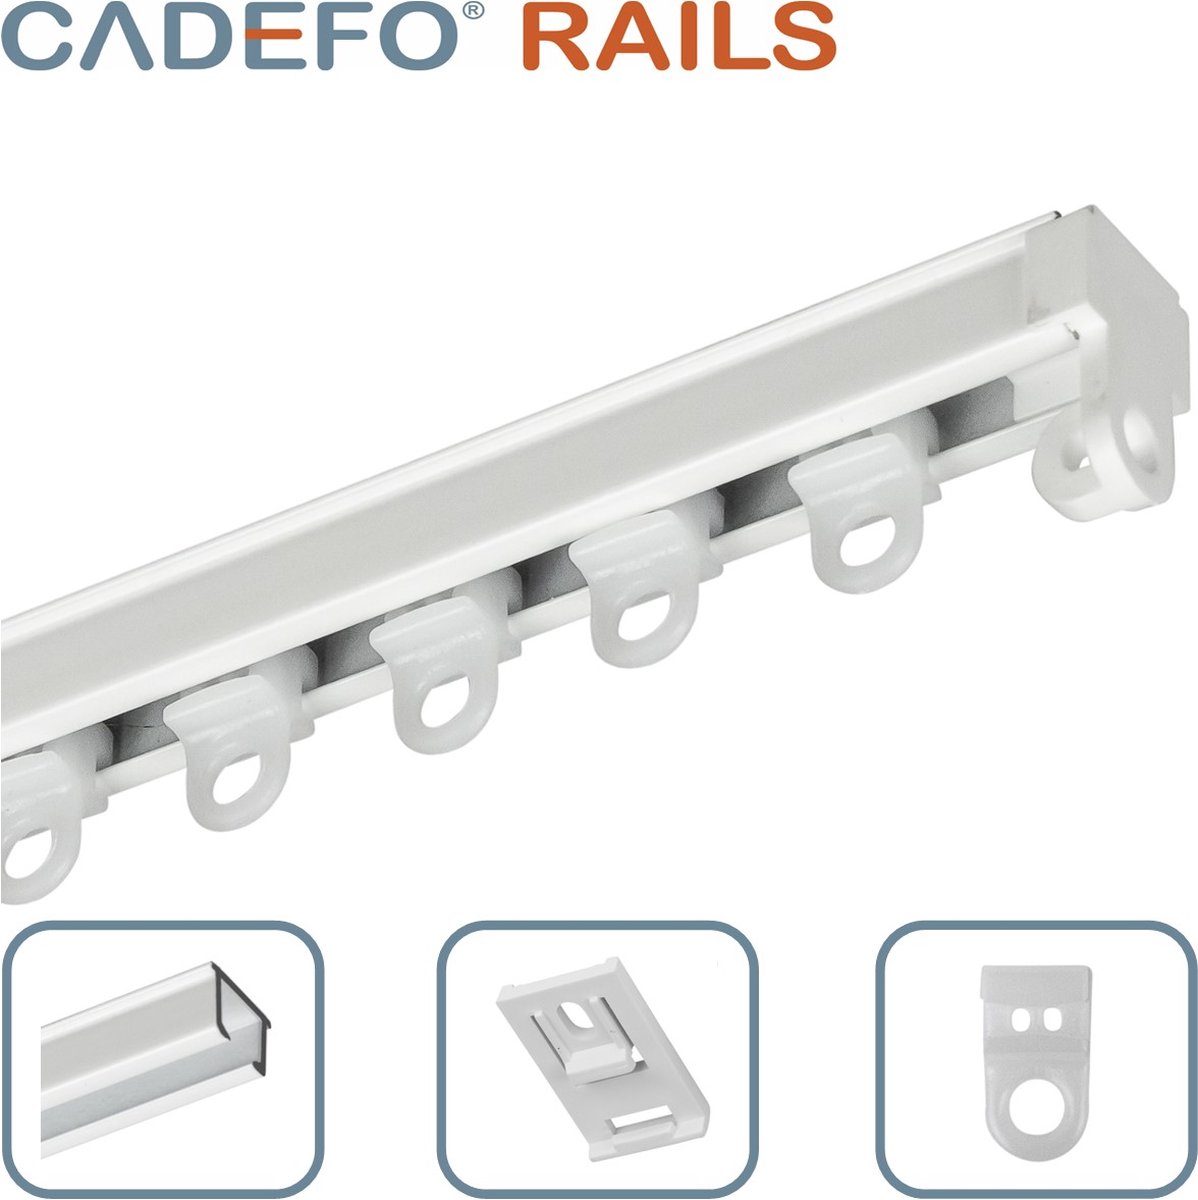 CADEFO RAILS (451 - 500 cm) Gordijnrails - Compleet op maat! - UIT 1 STUK - Leverbaar tot 6 meter - Plafondbevestiging - Lengte 480 cm